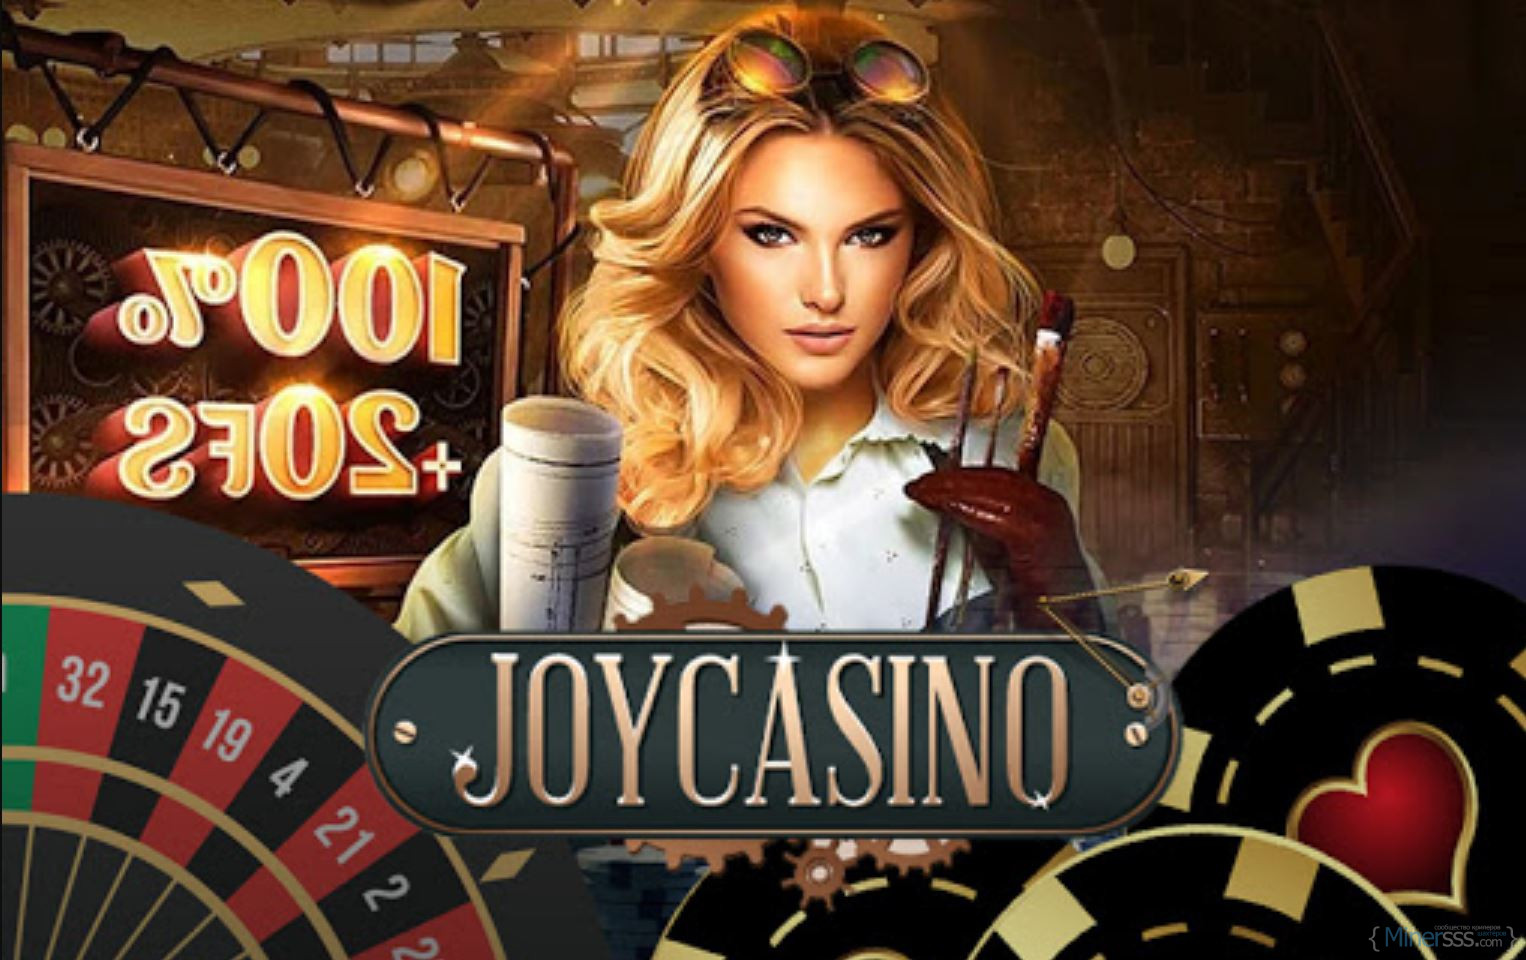 Сайт joy casino joycasinosite555. Реклама казино. Джой казино. Самое престижное казино.